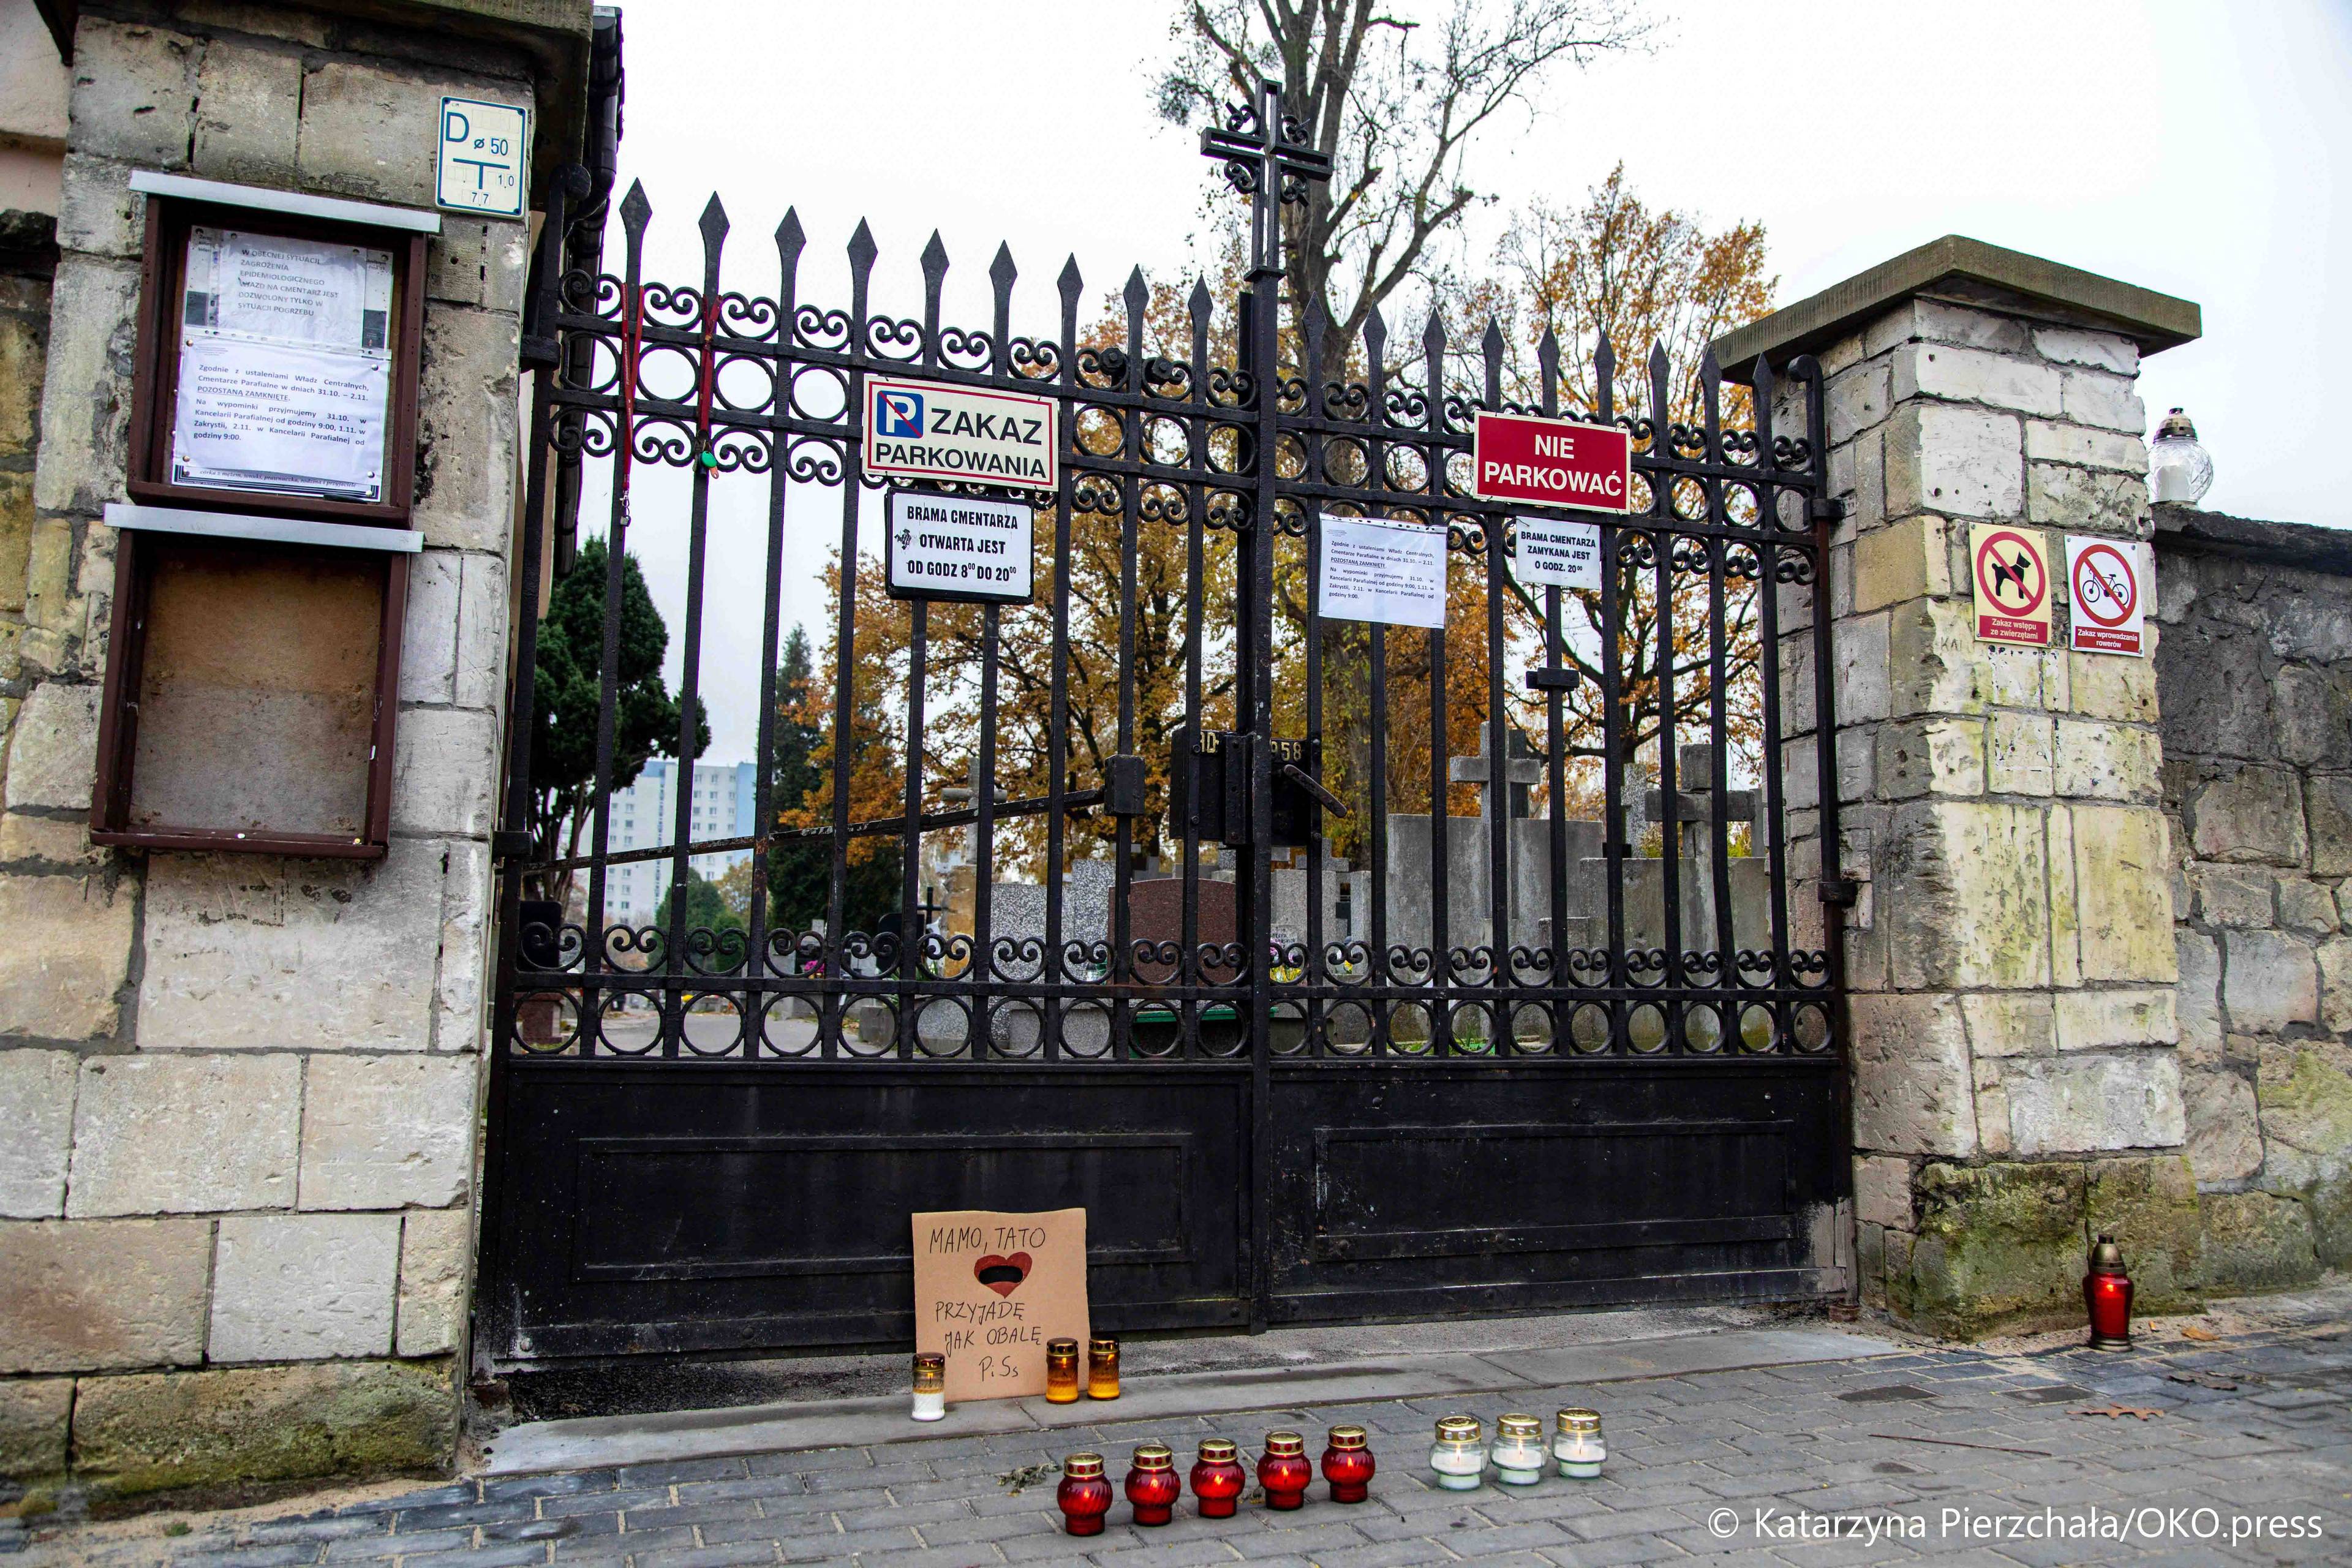 Warszawa, 31.10.2020. W ostatniej chwili rząd podjął decyzję o zamknięciu cmentarzy. Sprzedawcy kwiatów straty liczą w dziesiątkach tysięcy